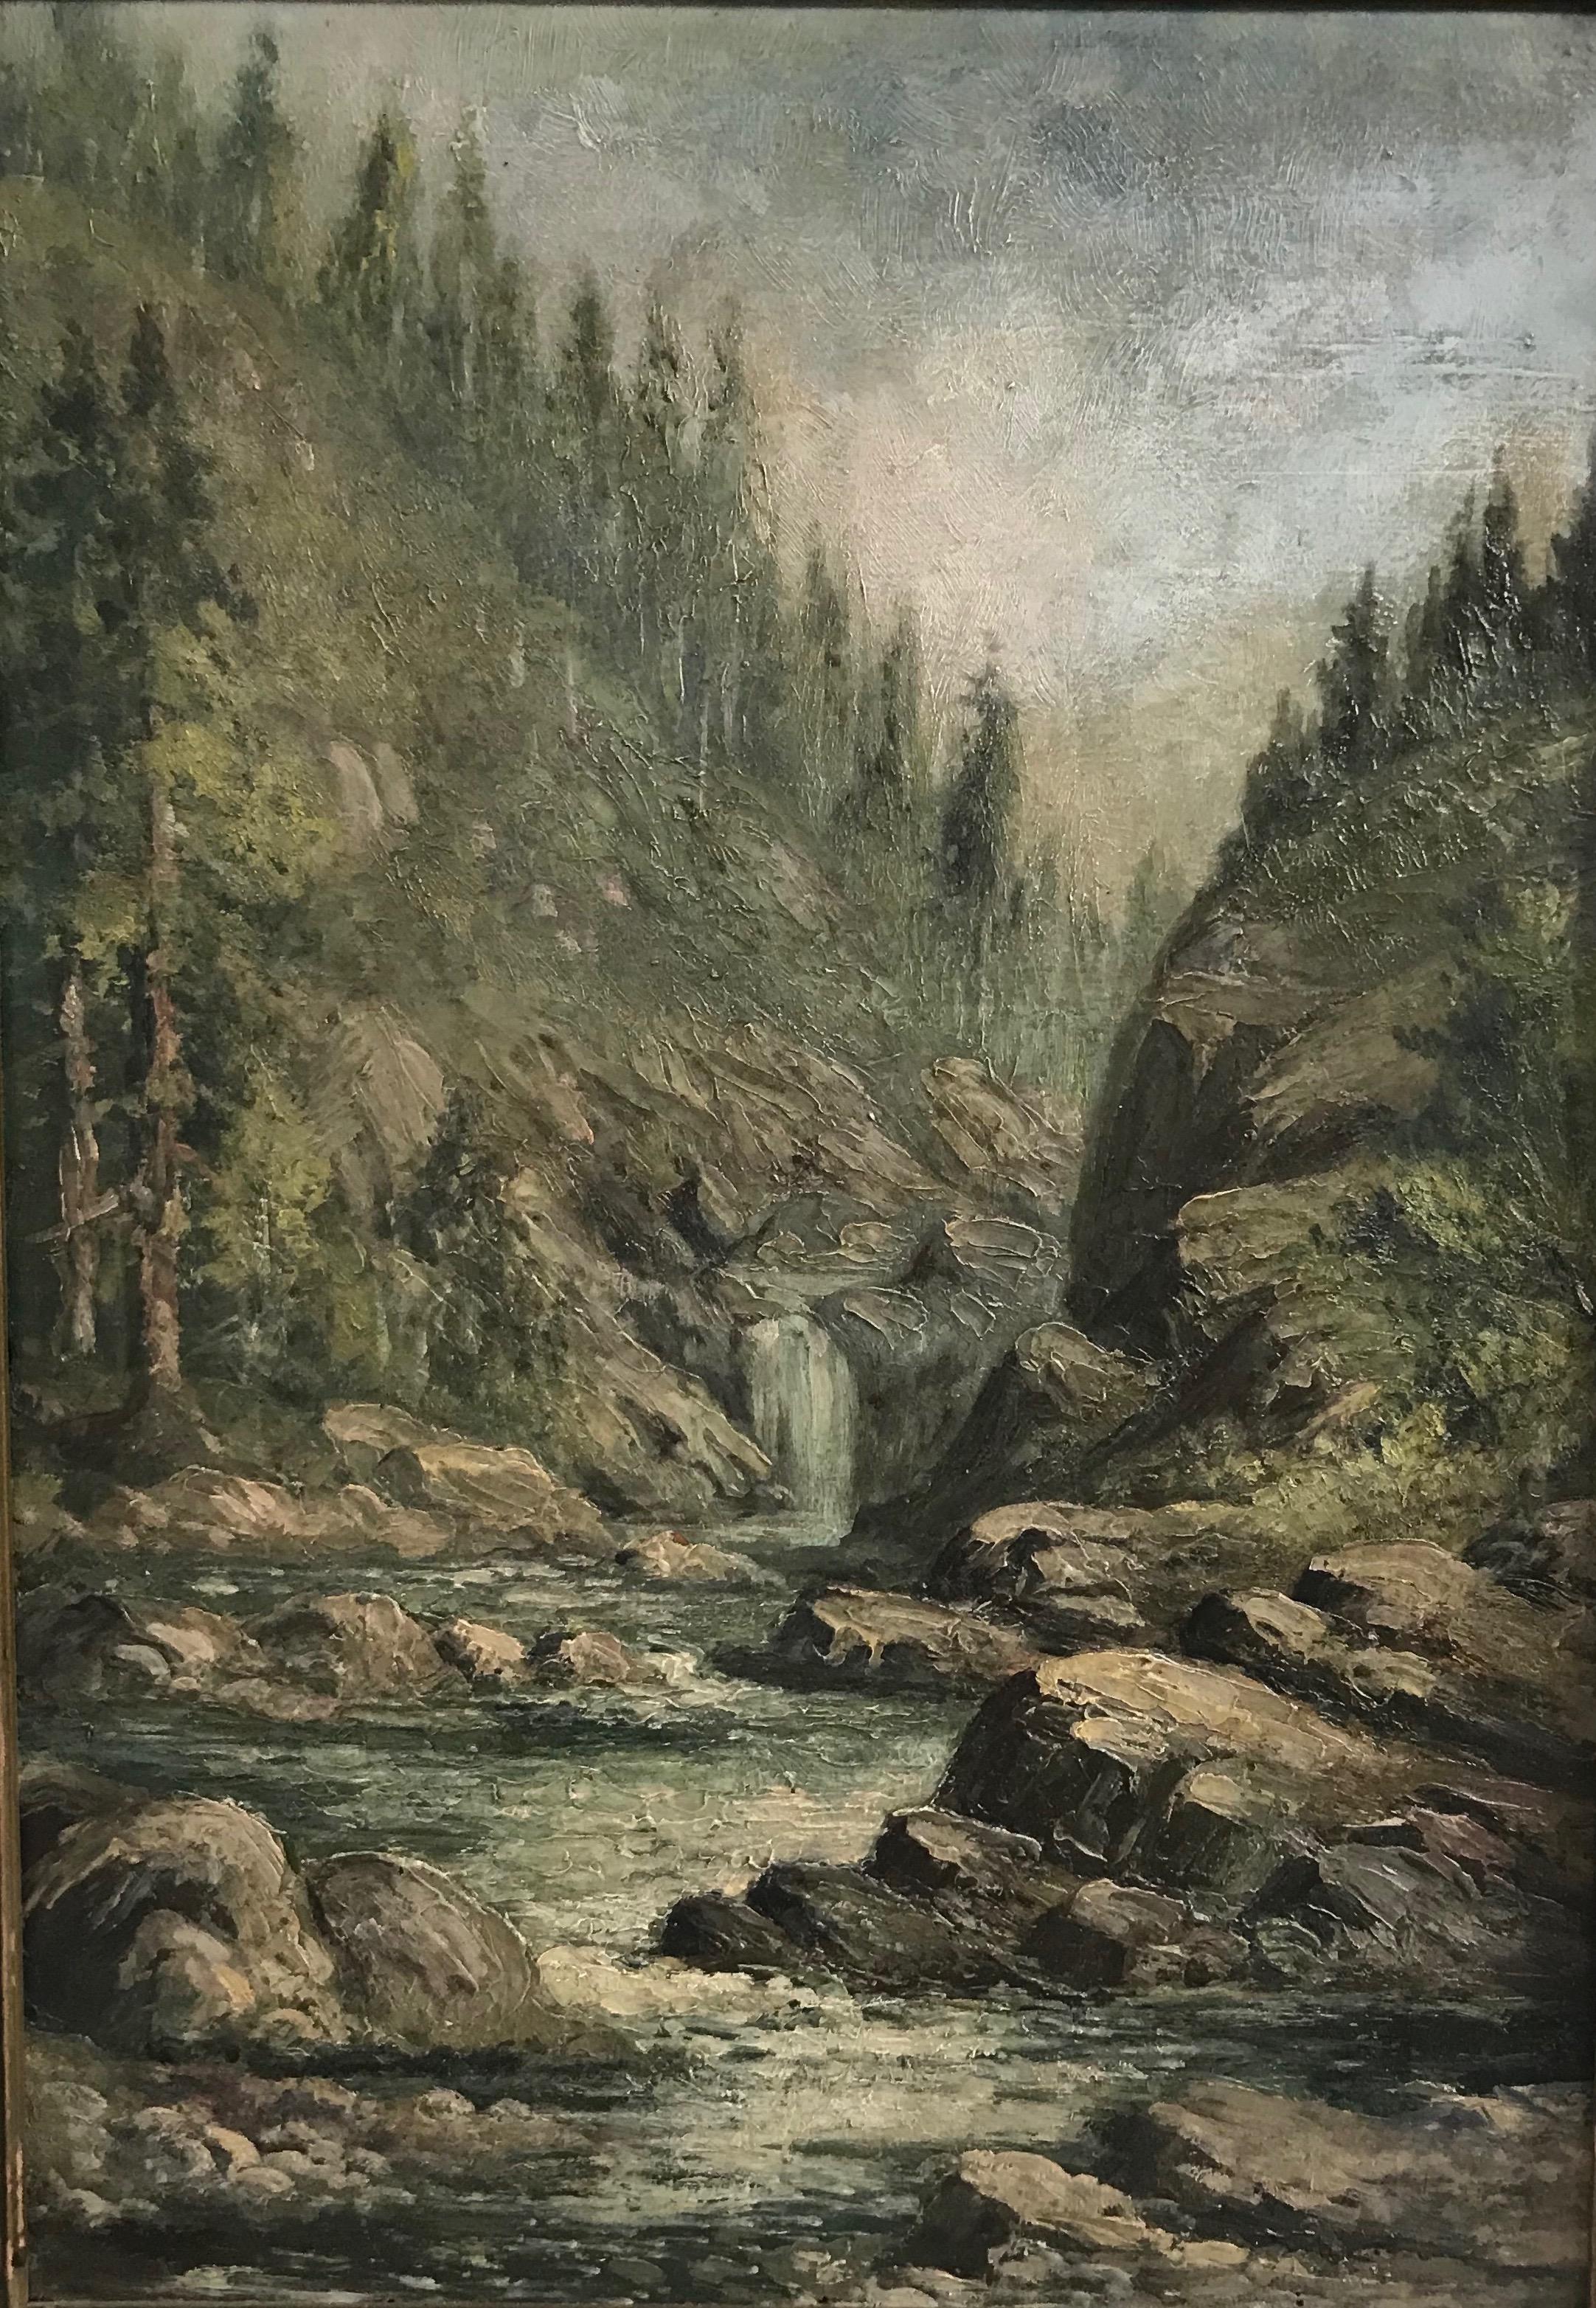 Wunderschön gemalte Flusslandschaft mit Bergen und einem Wasserfall, in original geschnitztem und vergoldetem Tortenbodenrahmen.
Öl auf Malerkarton, unsigniert.
Amerikanisch, frühes 20. Jahrhundert.